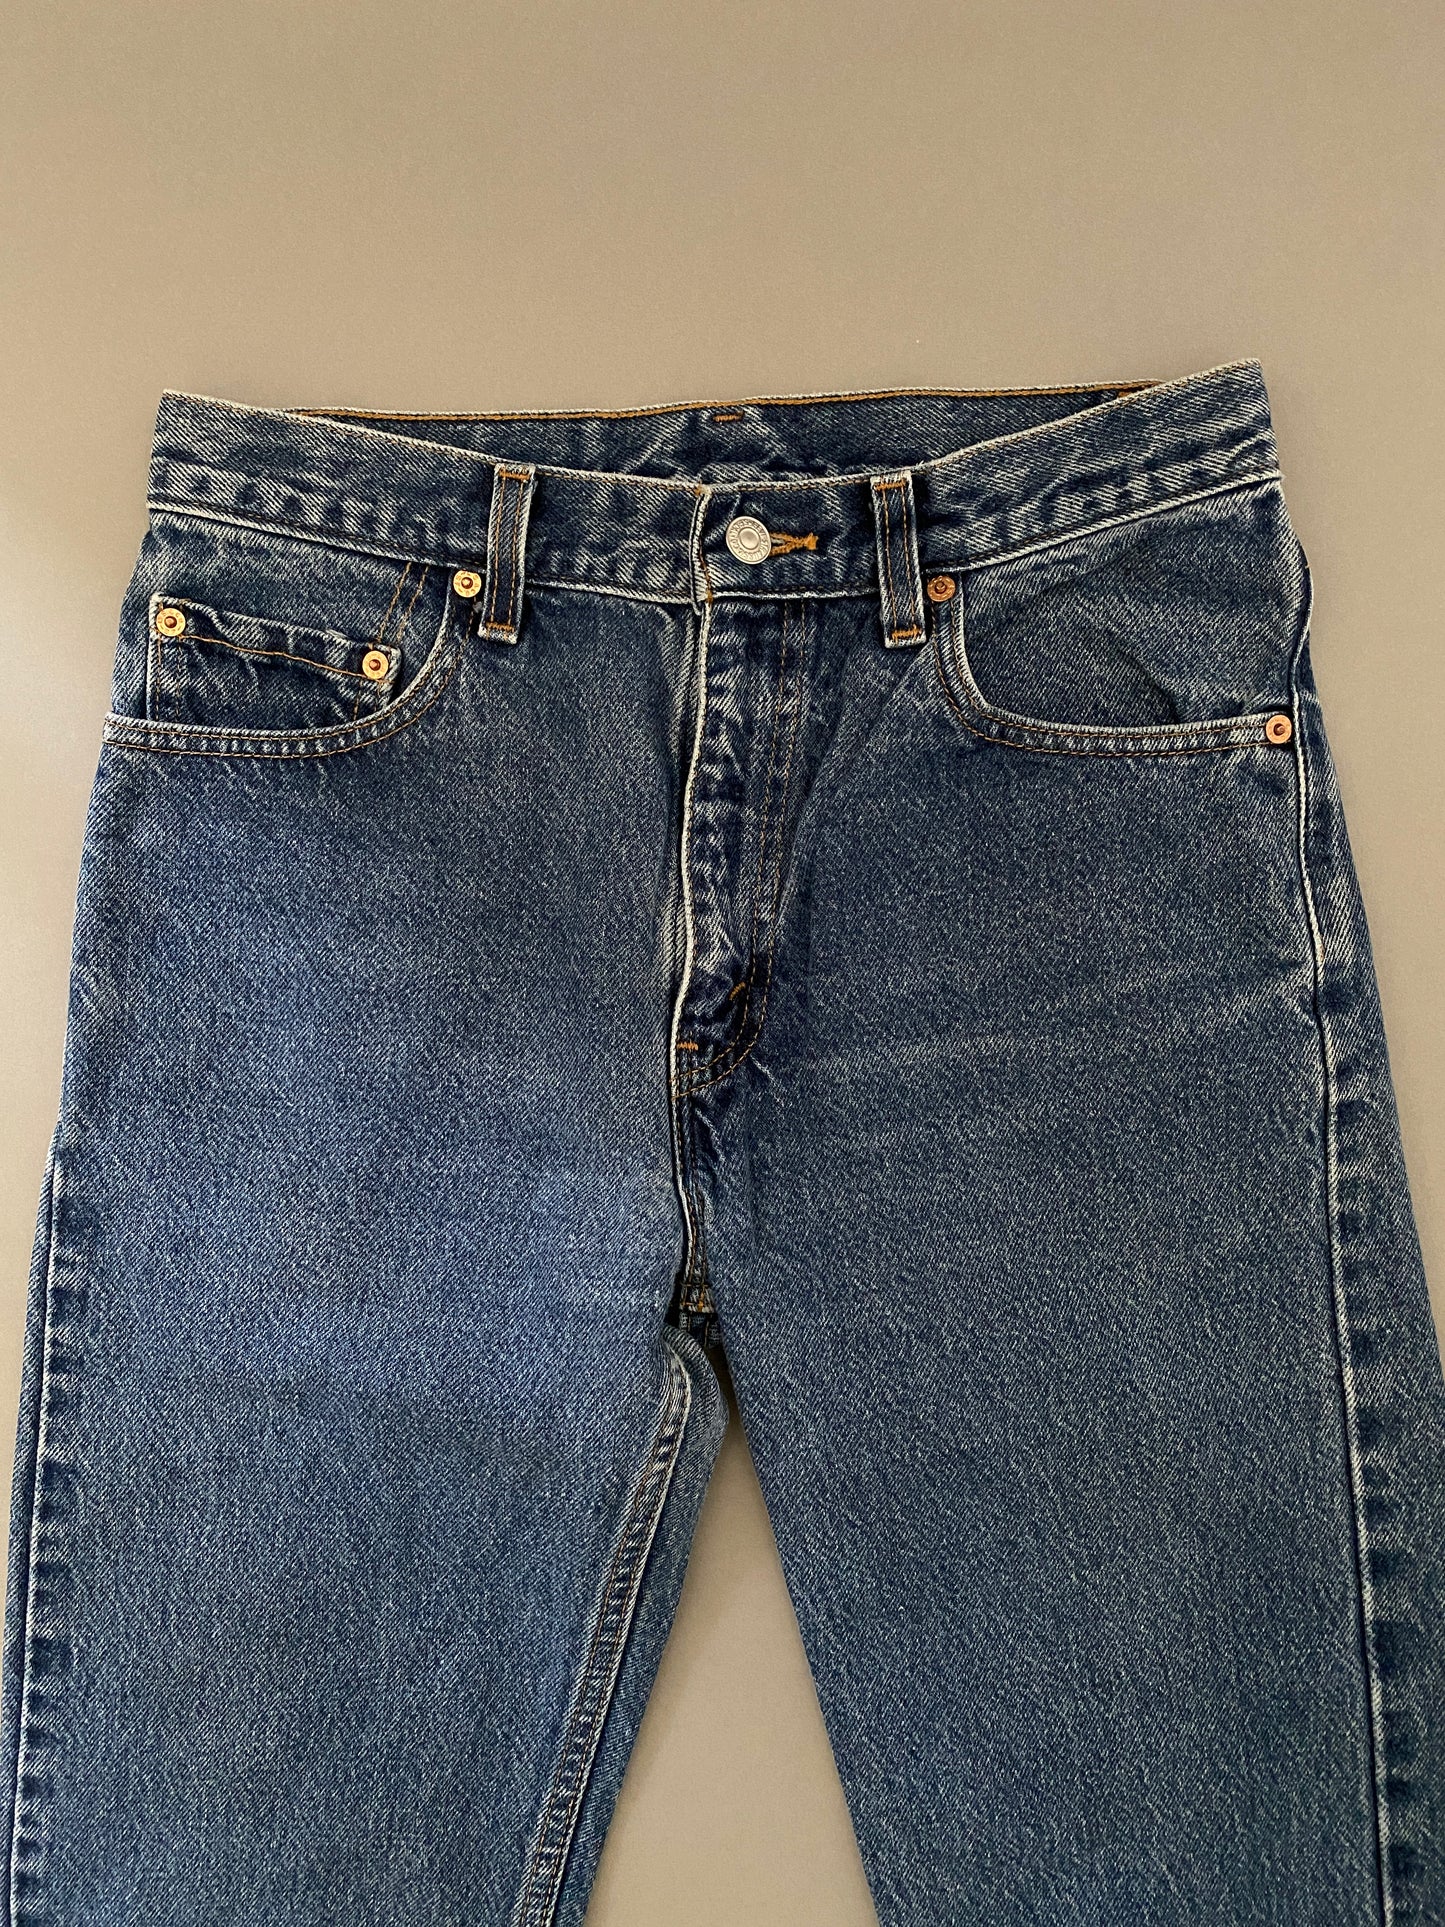 Levis 554 Vintage Jeans